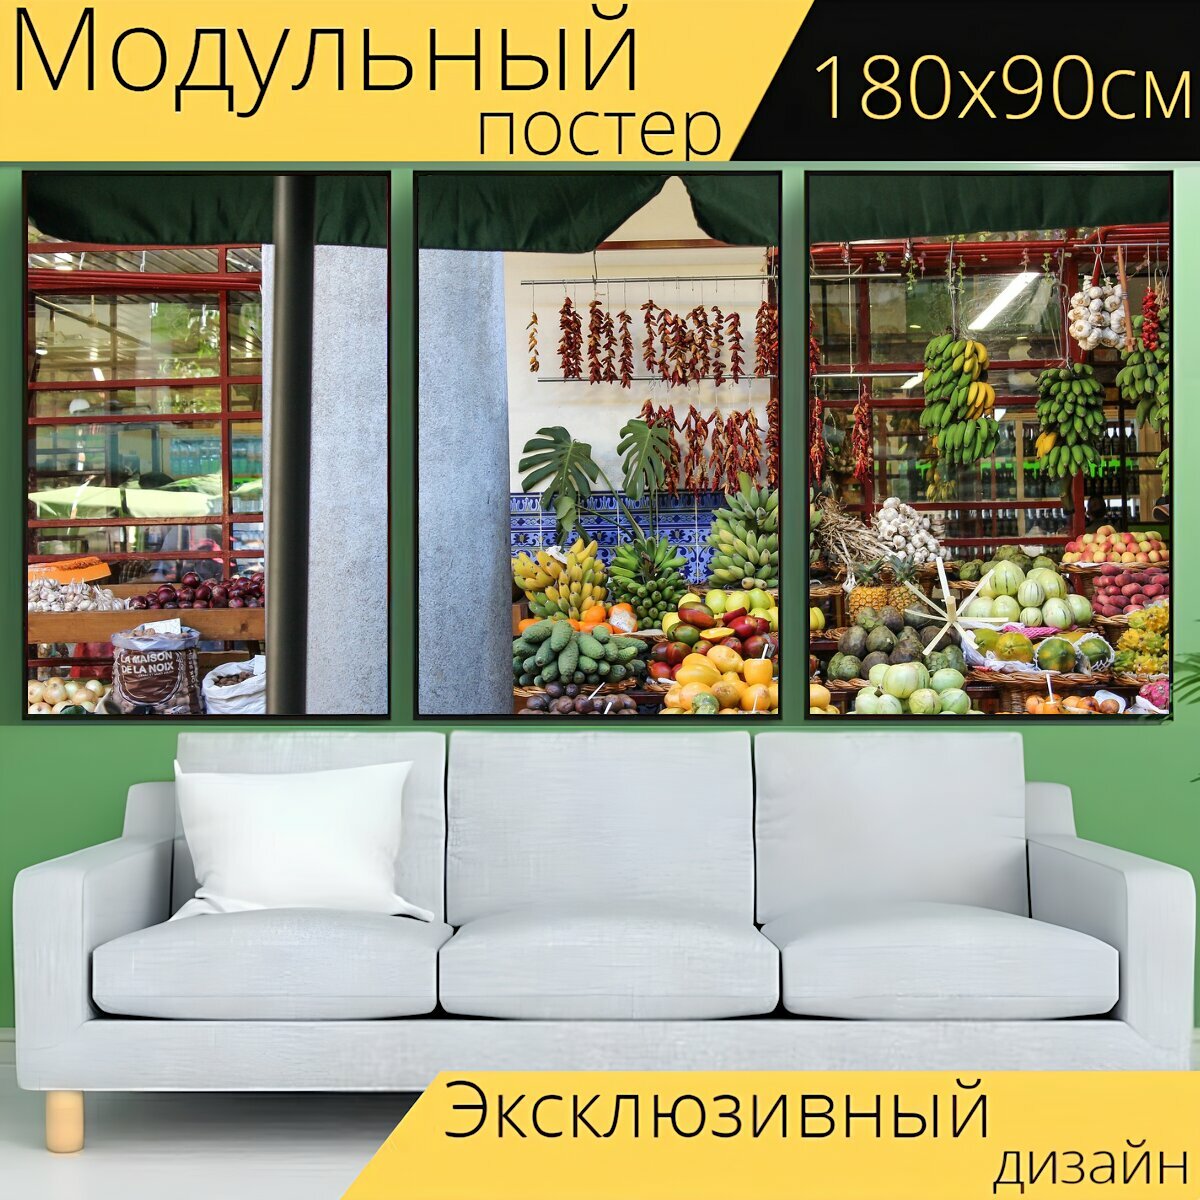 Модульный постер "Рынок, уличный рынок, культура" 180 x 90 см. для интерьера